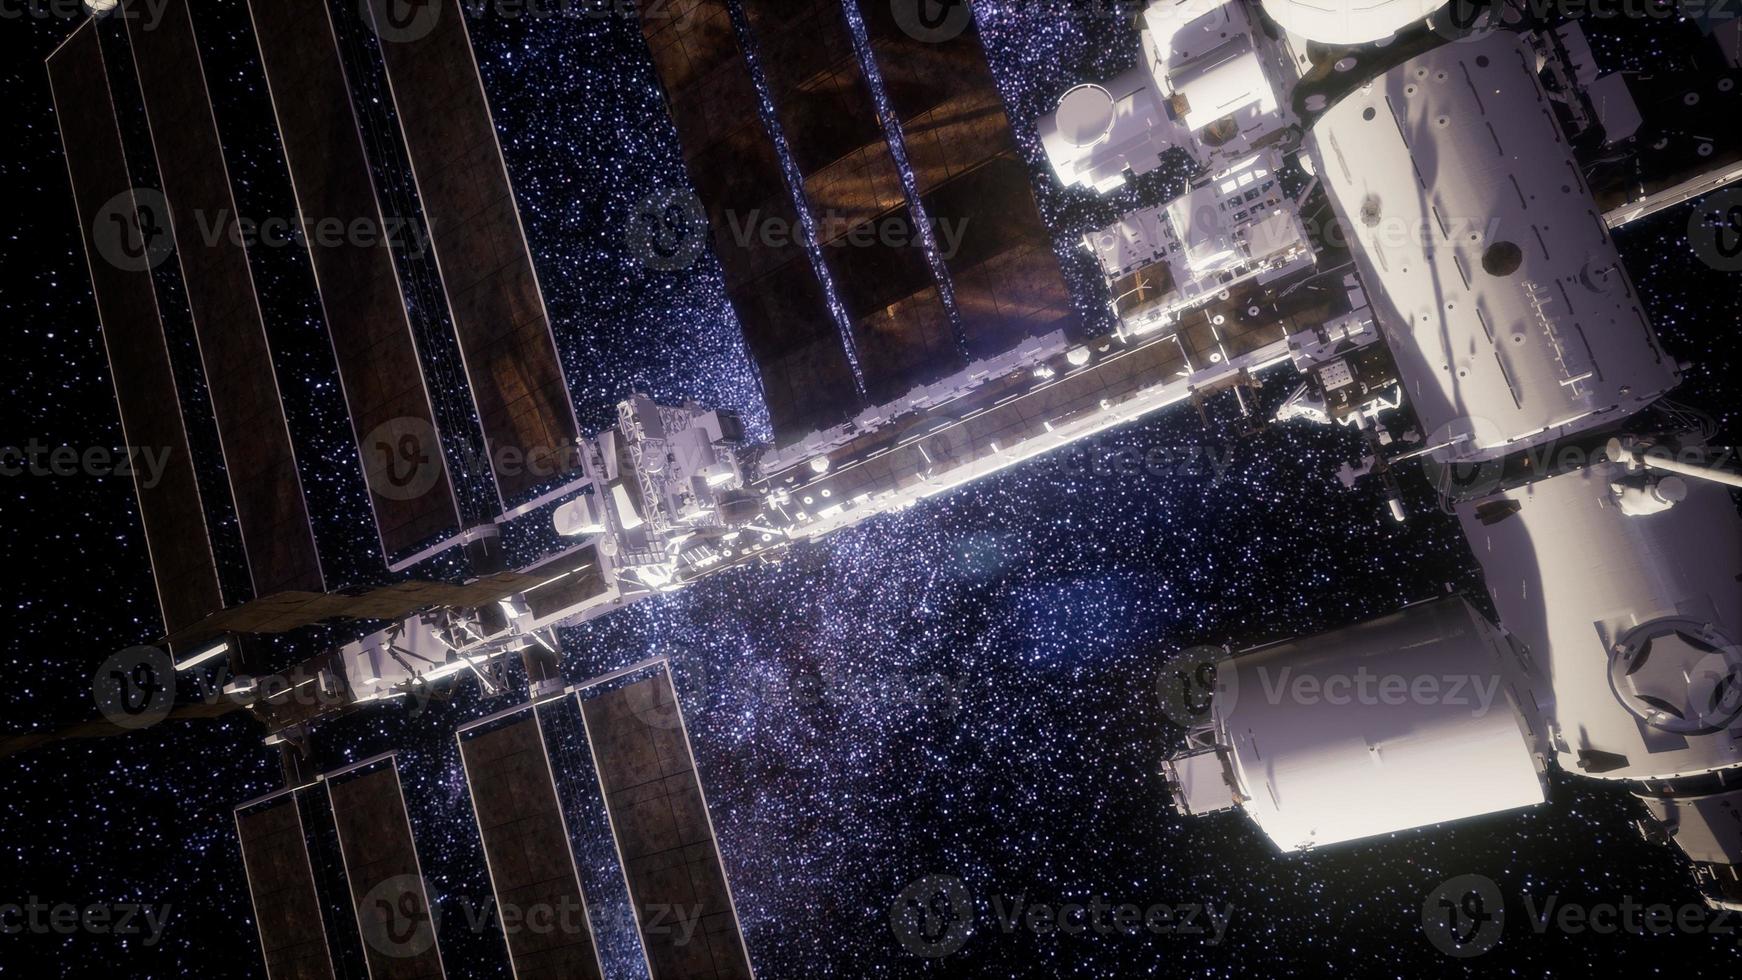 estação espacial internacional no espaço sideral foto